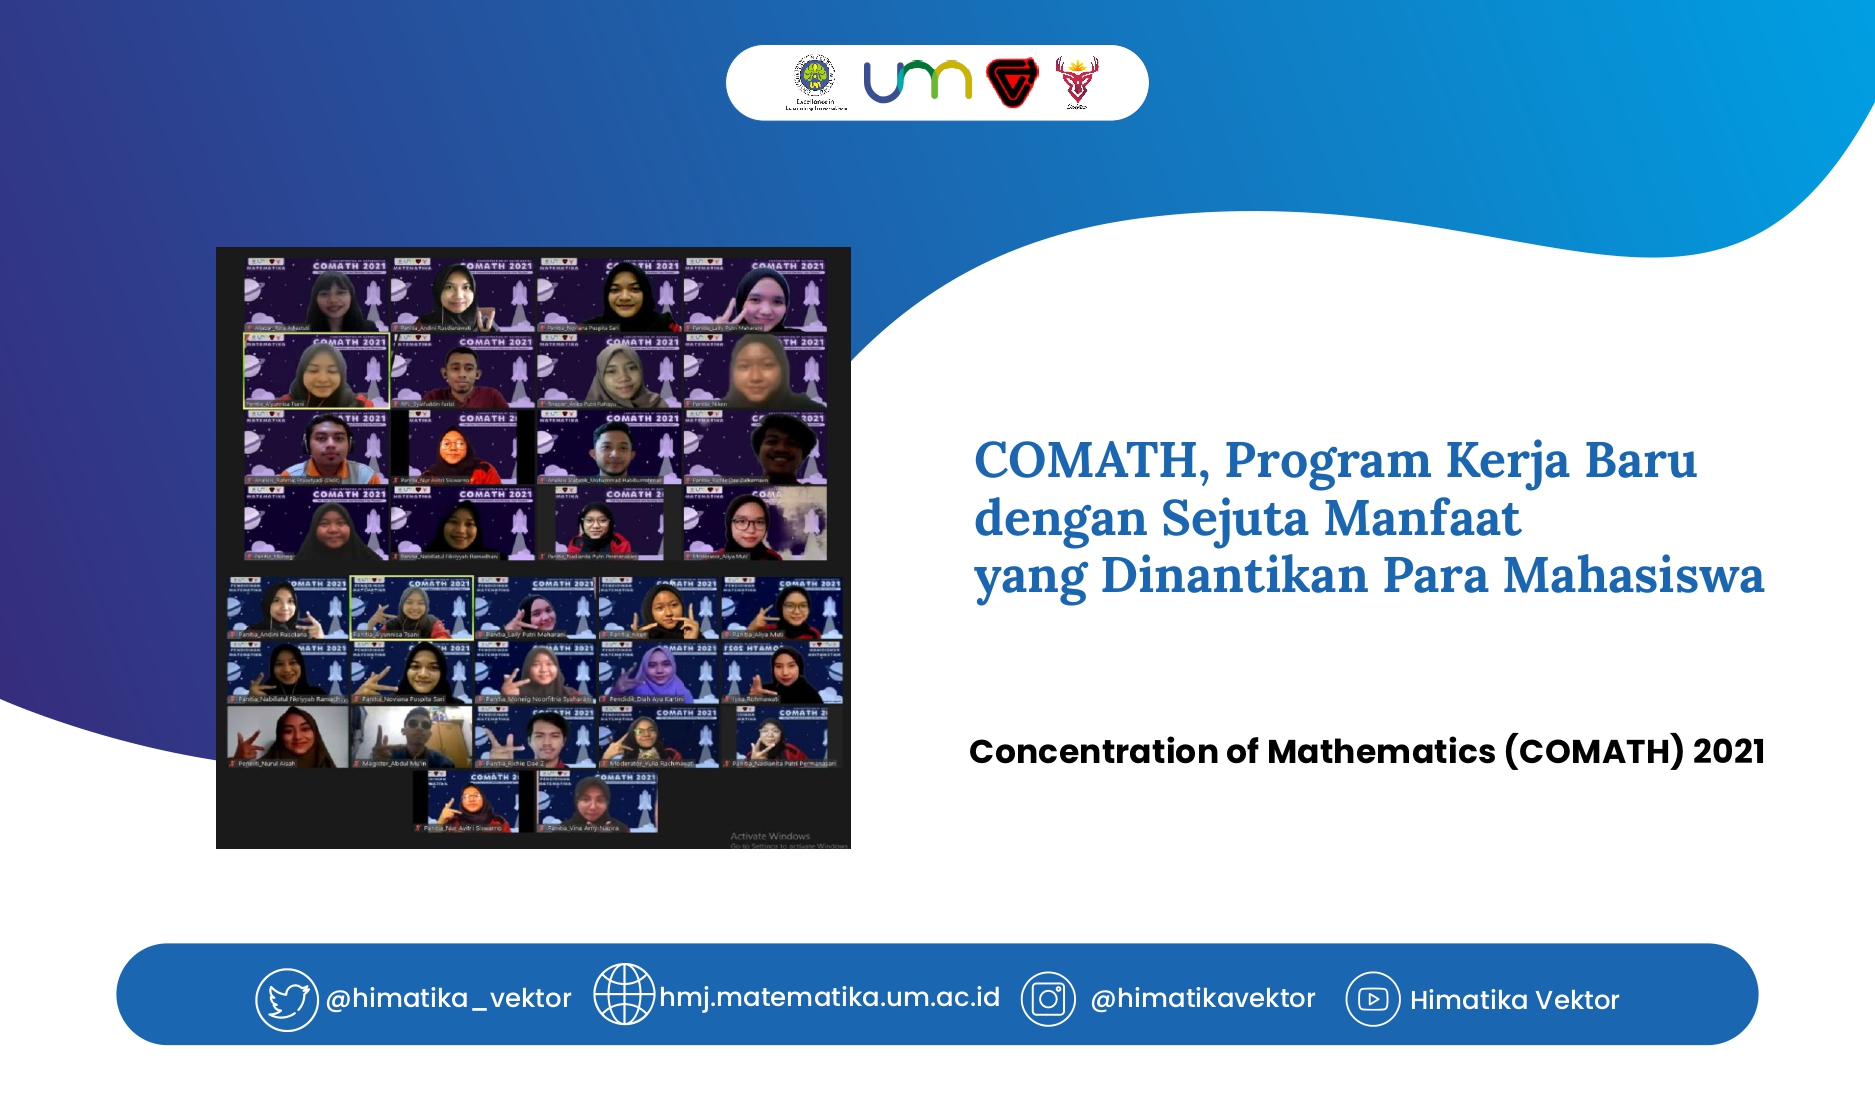 COMATH, Program Kerja Baru dengan Sejuta Manfaat yang Dinantikan Para Mahasiswa